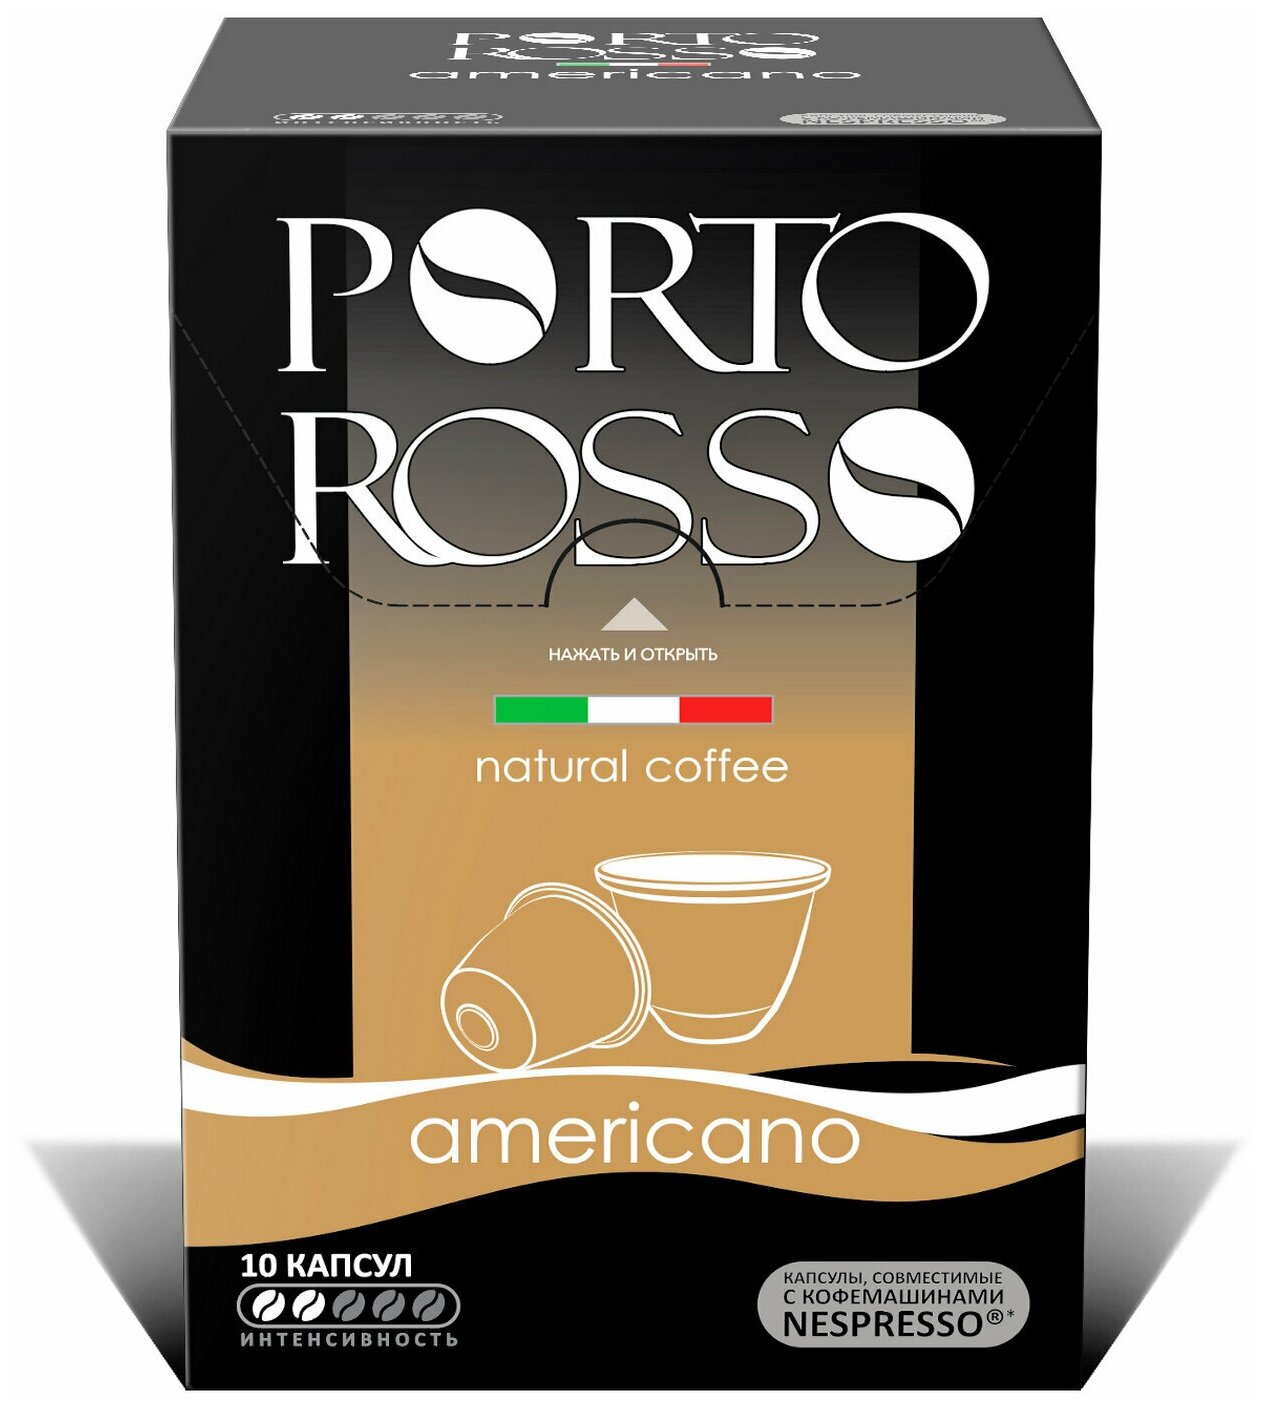 Квант продажи 2 ед. Кофе в капсулах PORTO ROSSO «Americano» для кофемашин Nespresso, 10 порций - фотография № 2